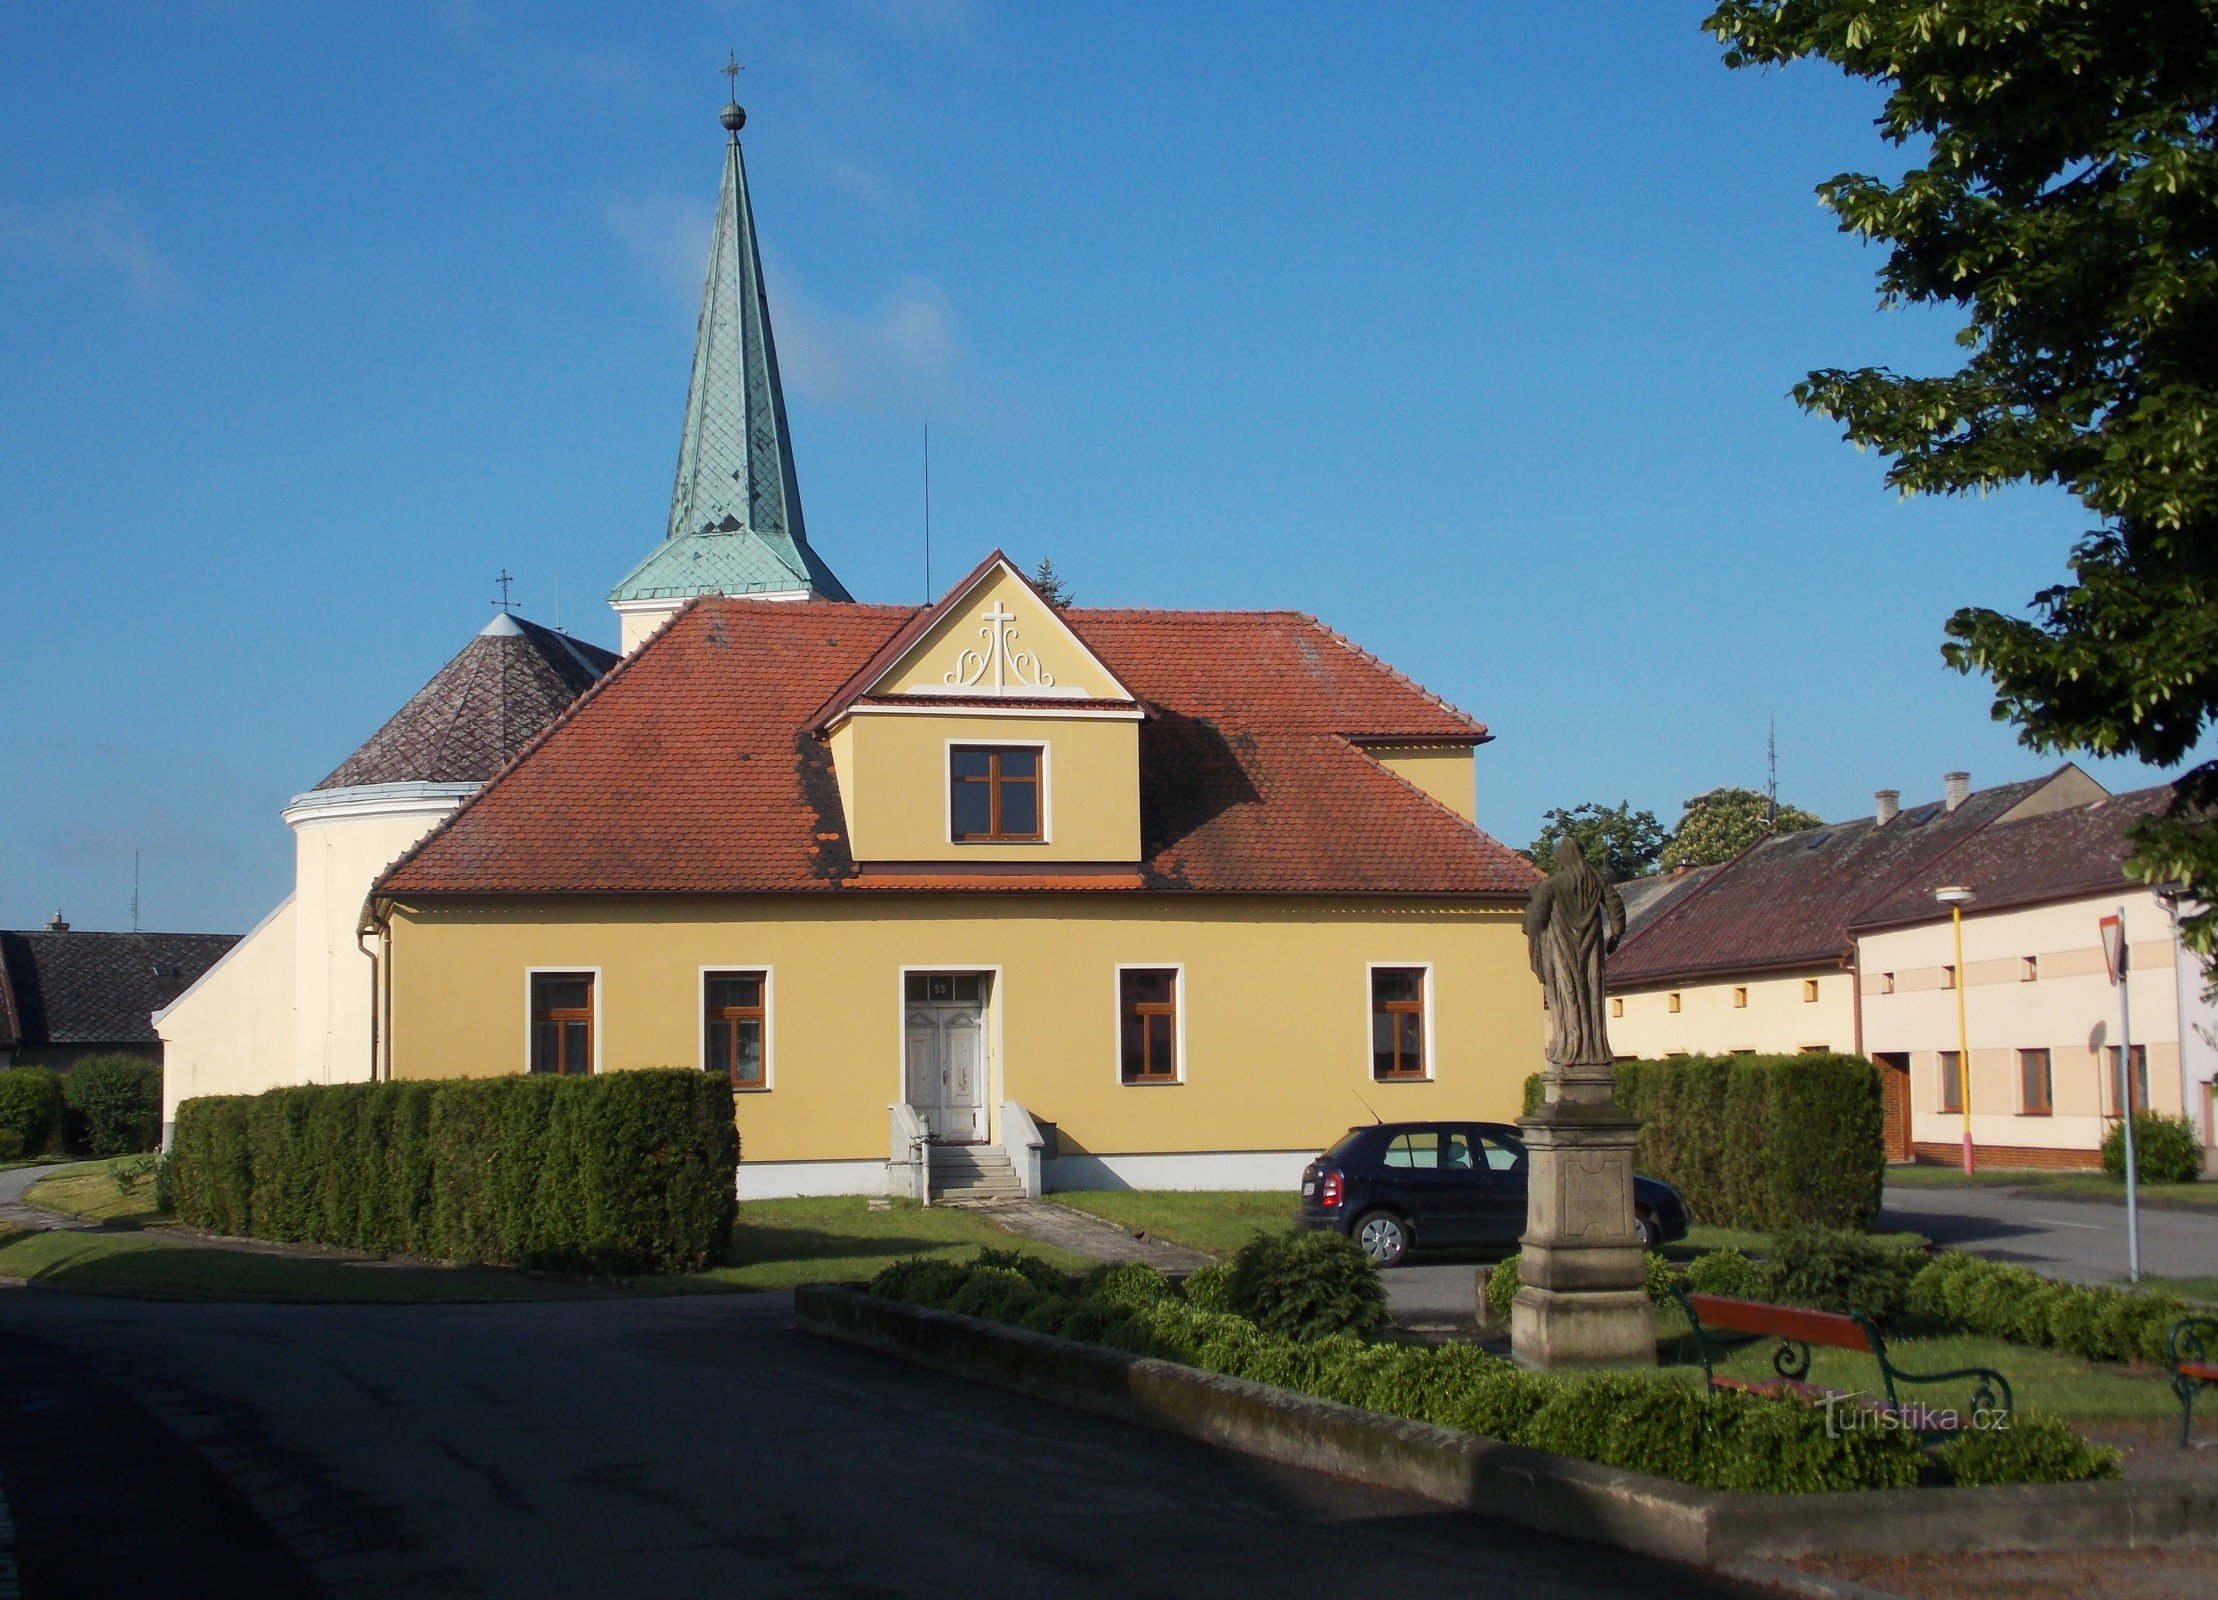 crkva sv. Bartolomej